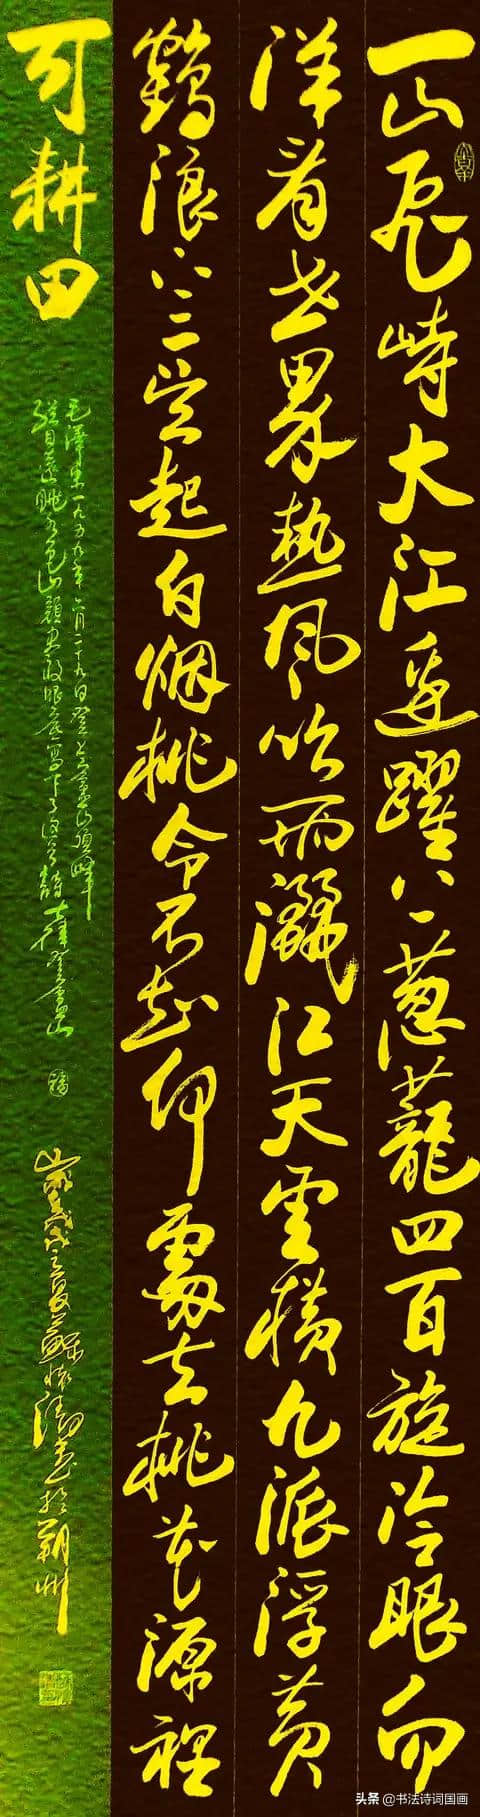 行草书法：钟山风雨起苍黄、竹里馆、送孟浩然之广陵、观沧海